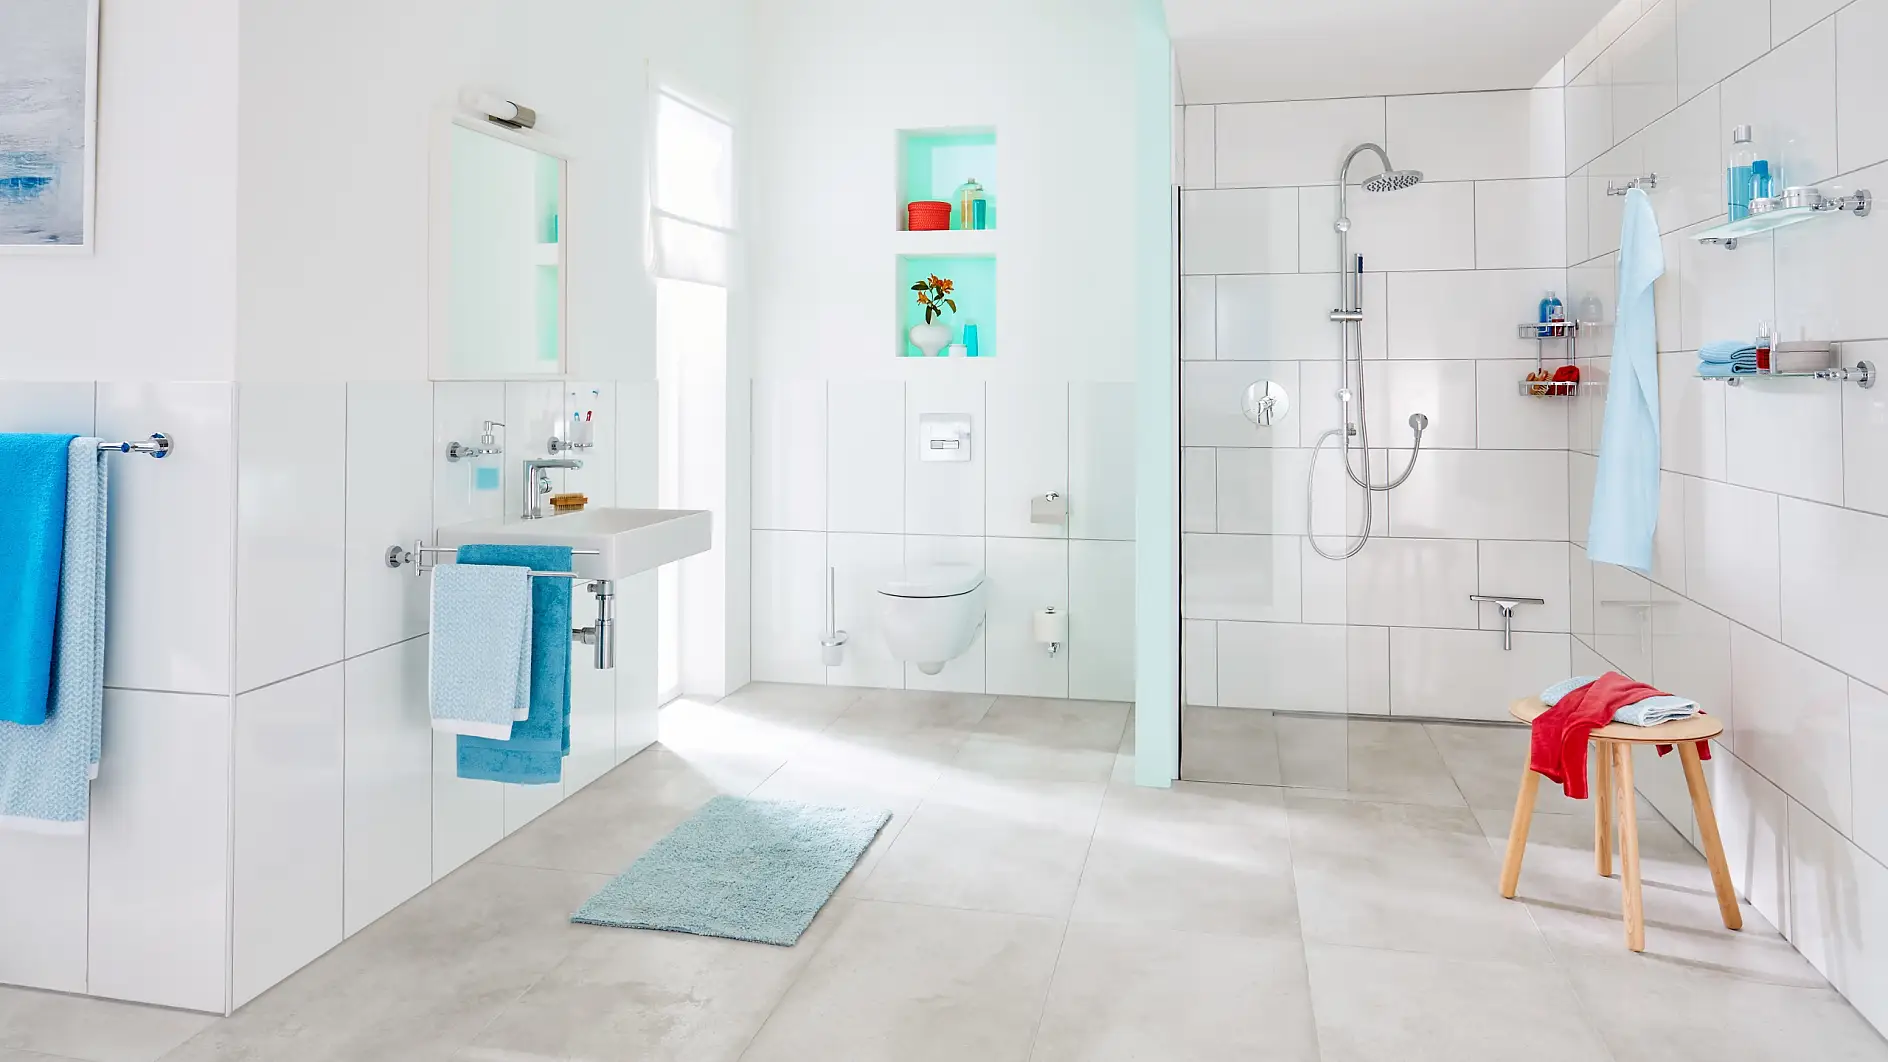 Tijdloos en smaakvol design voor jouw badkamer.